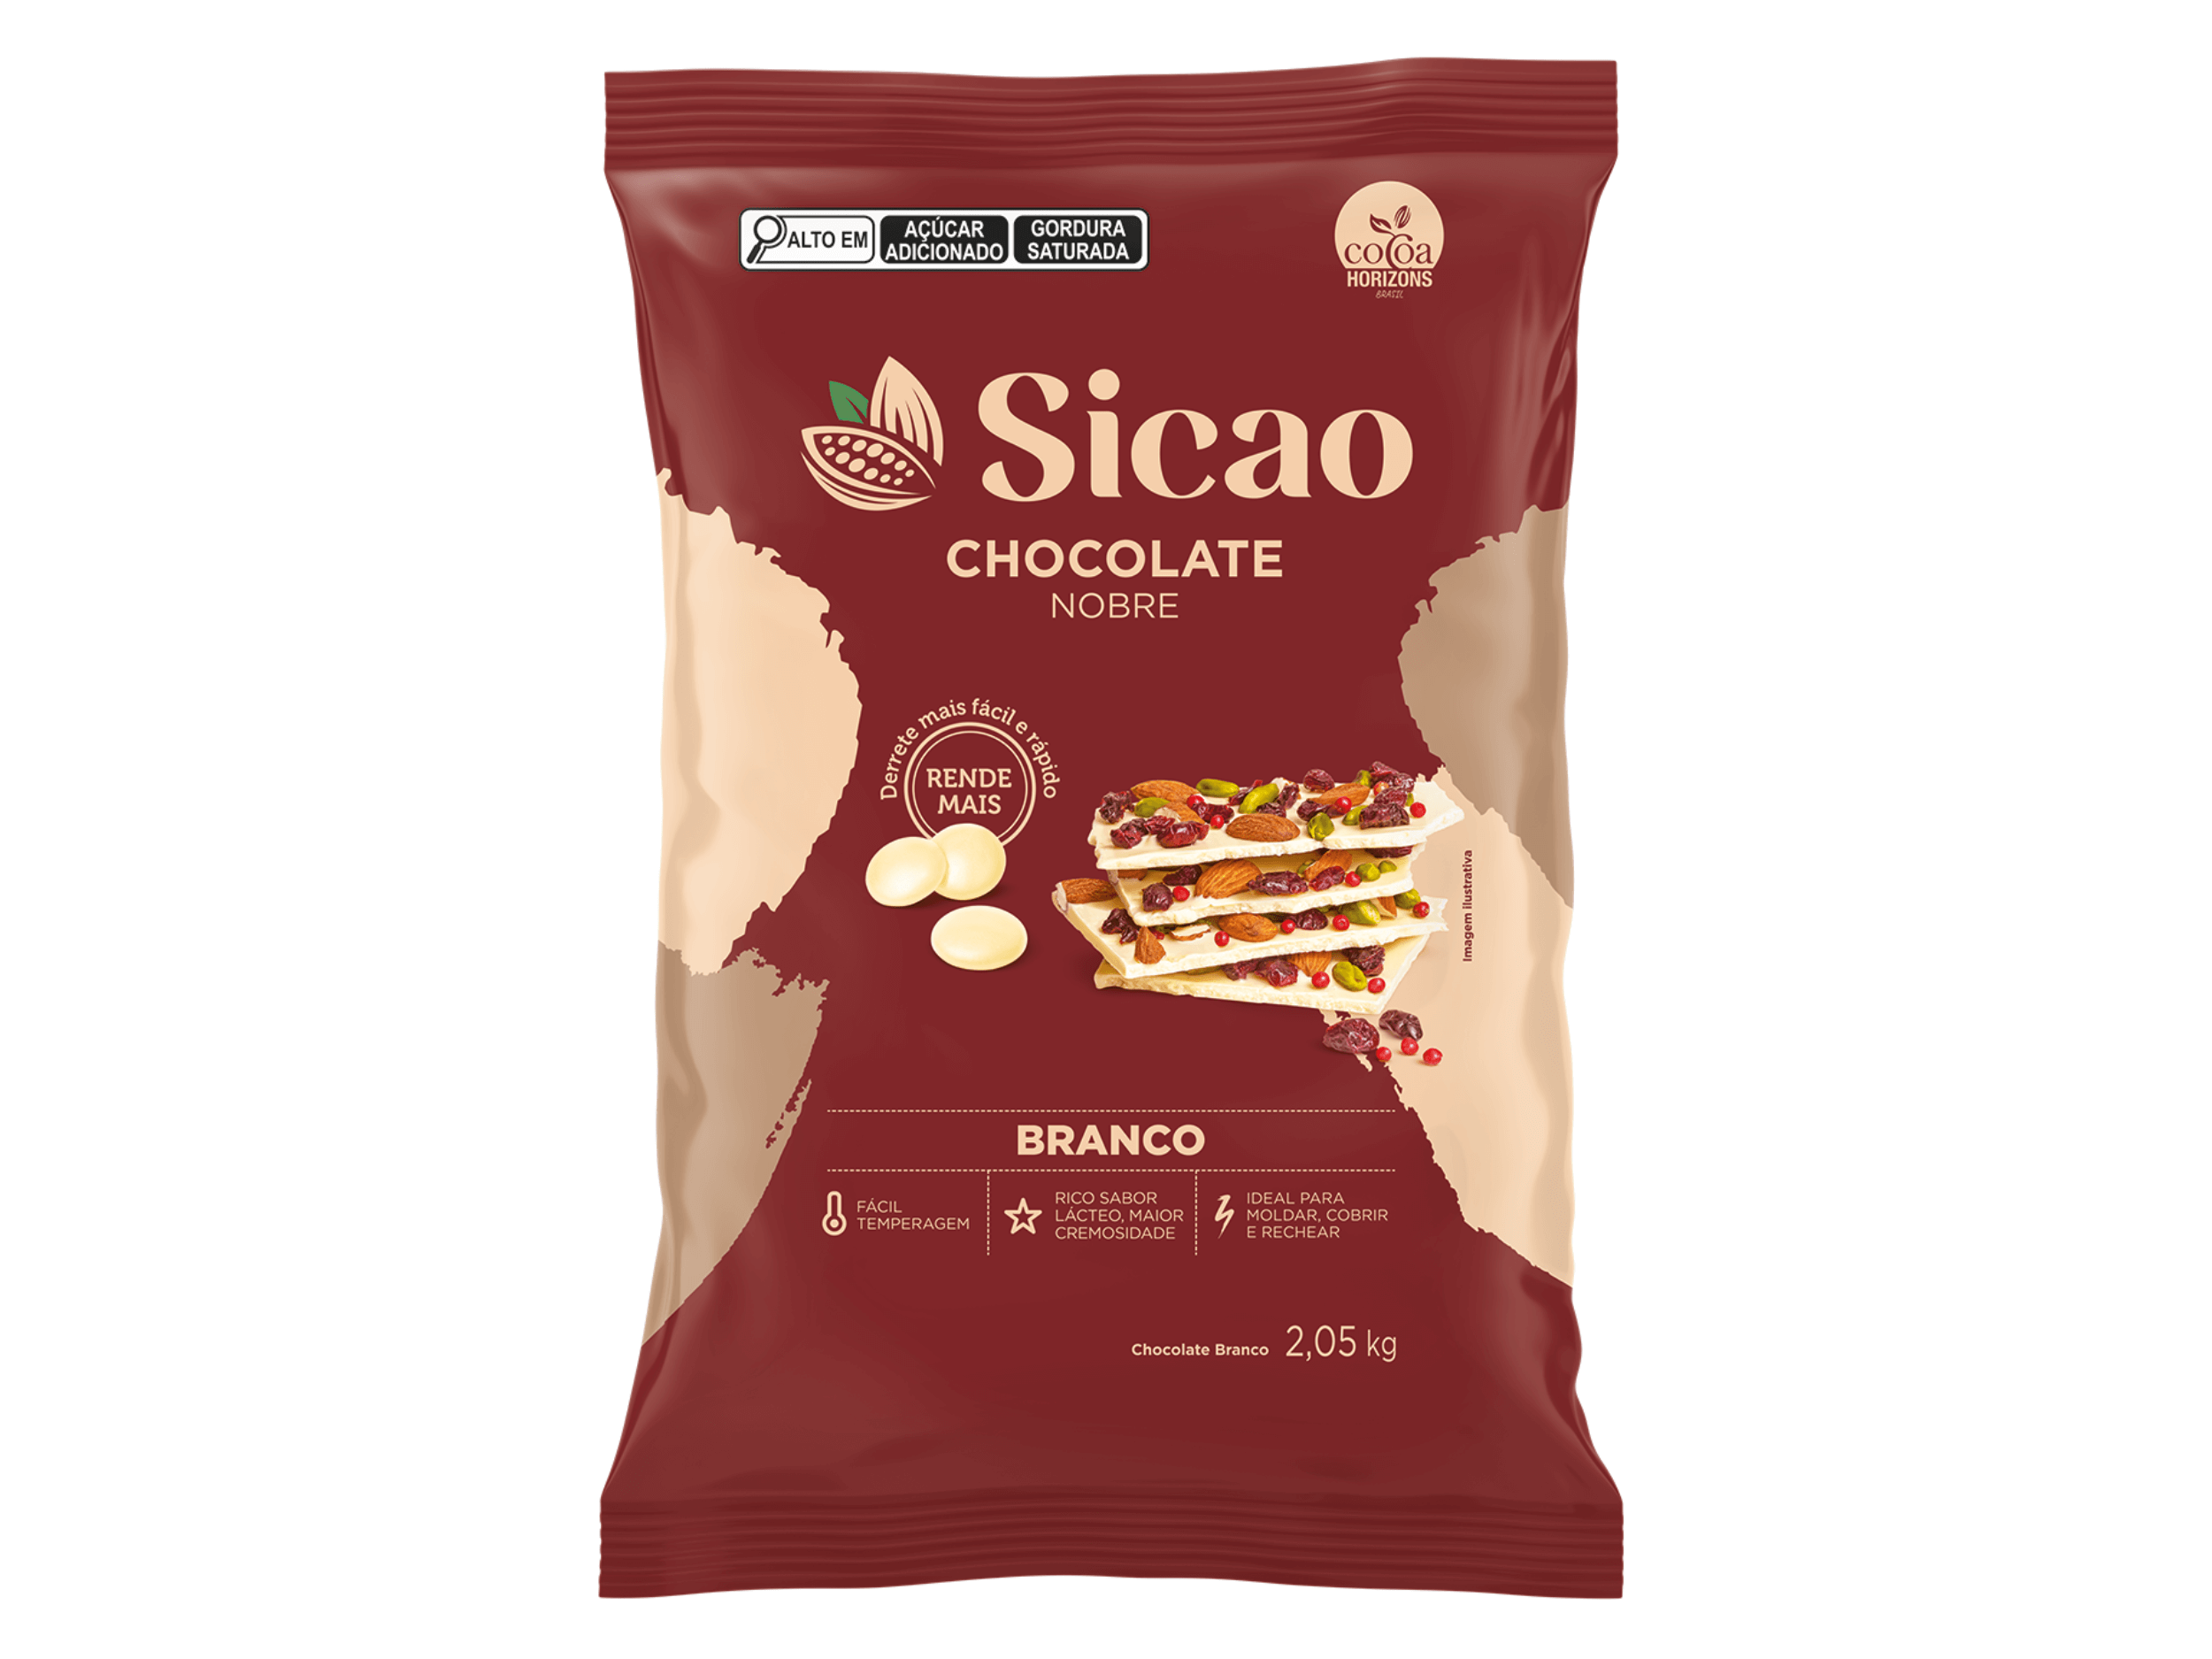 Chocolate Sicao Nobre Gotas Branco 2,05kg